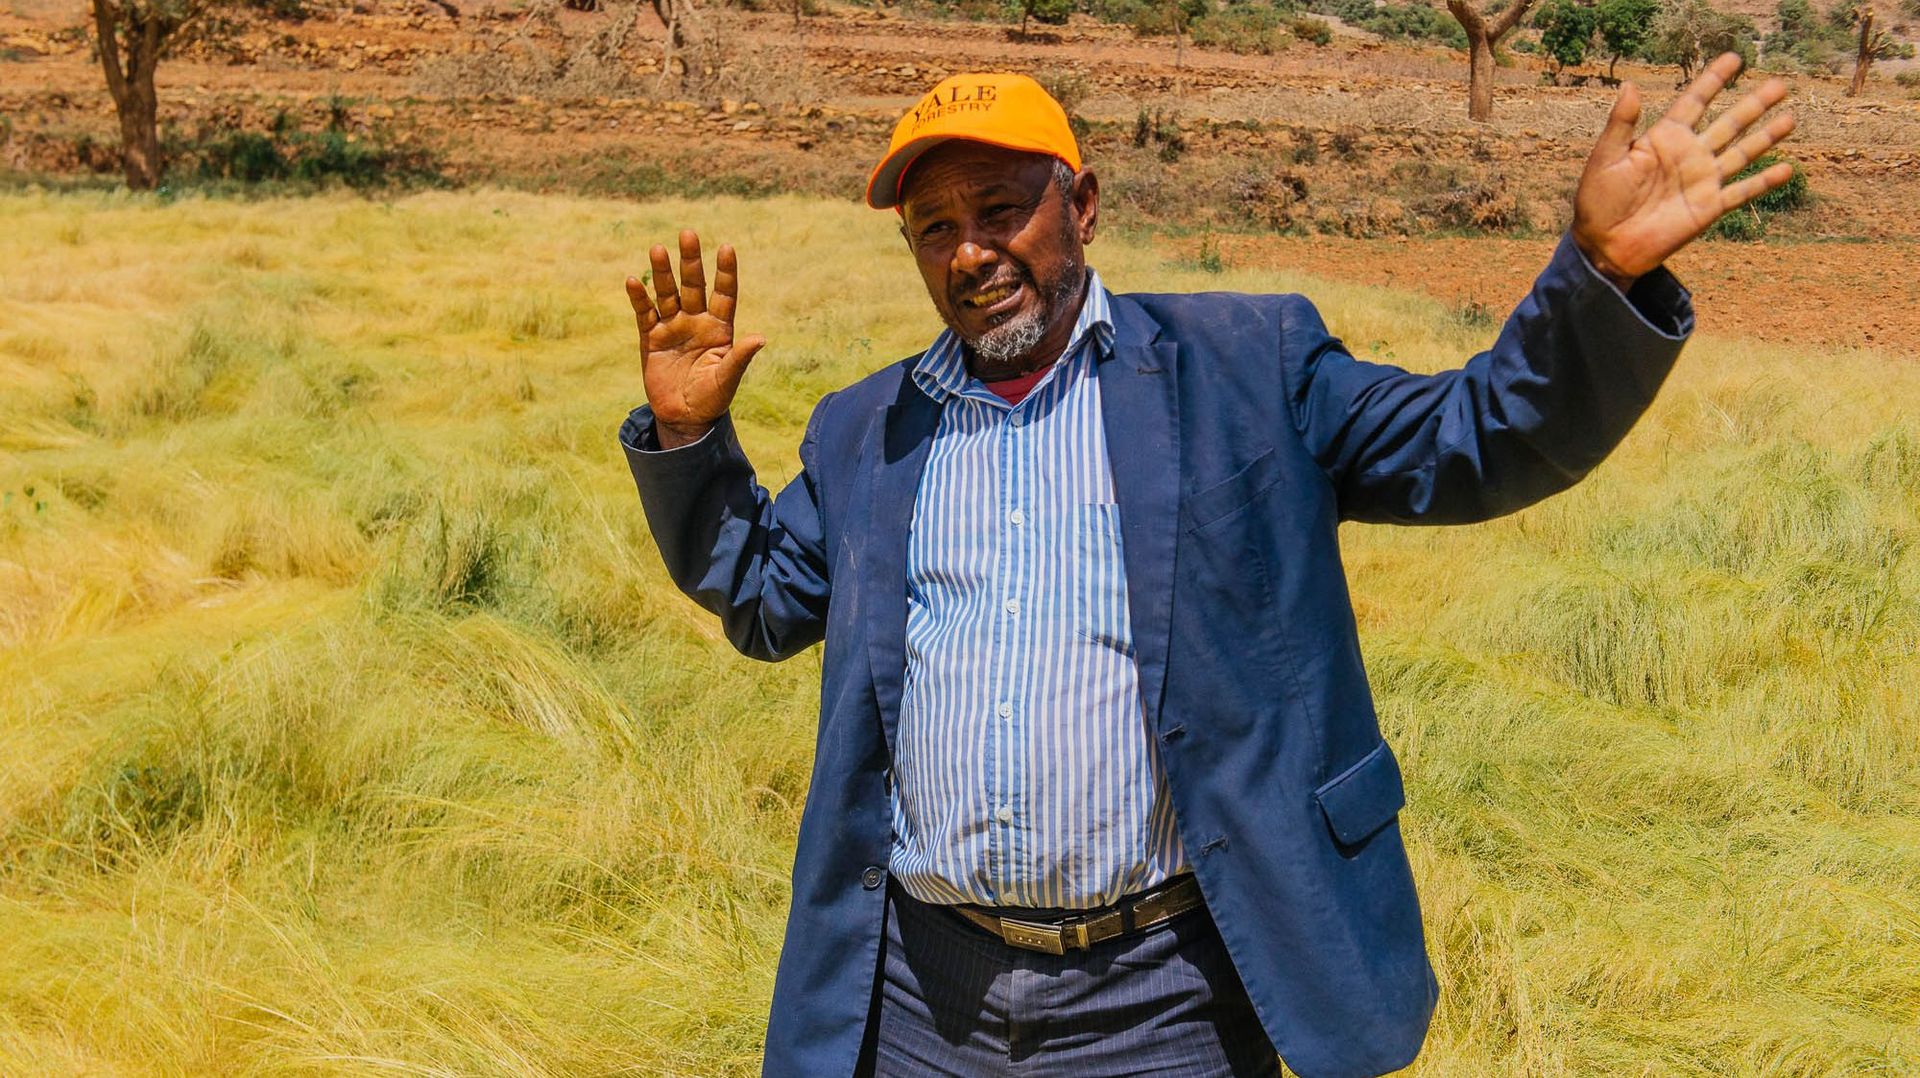 Abo Hawi, chef de village depuis 30 ans, a initié avec succès une transition verte dans sa région.